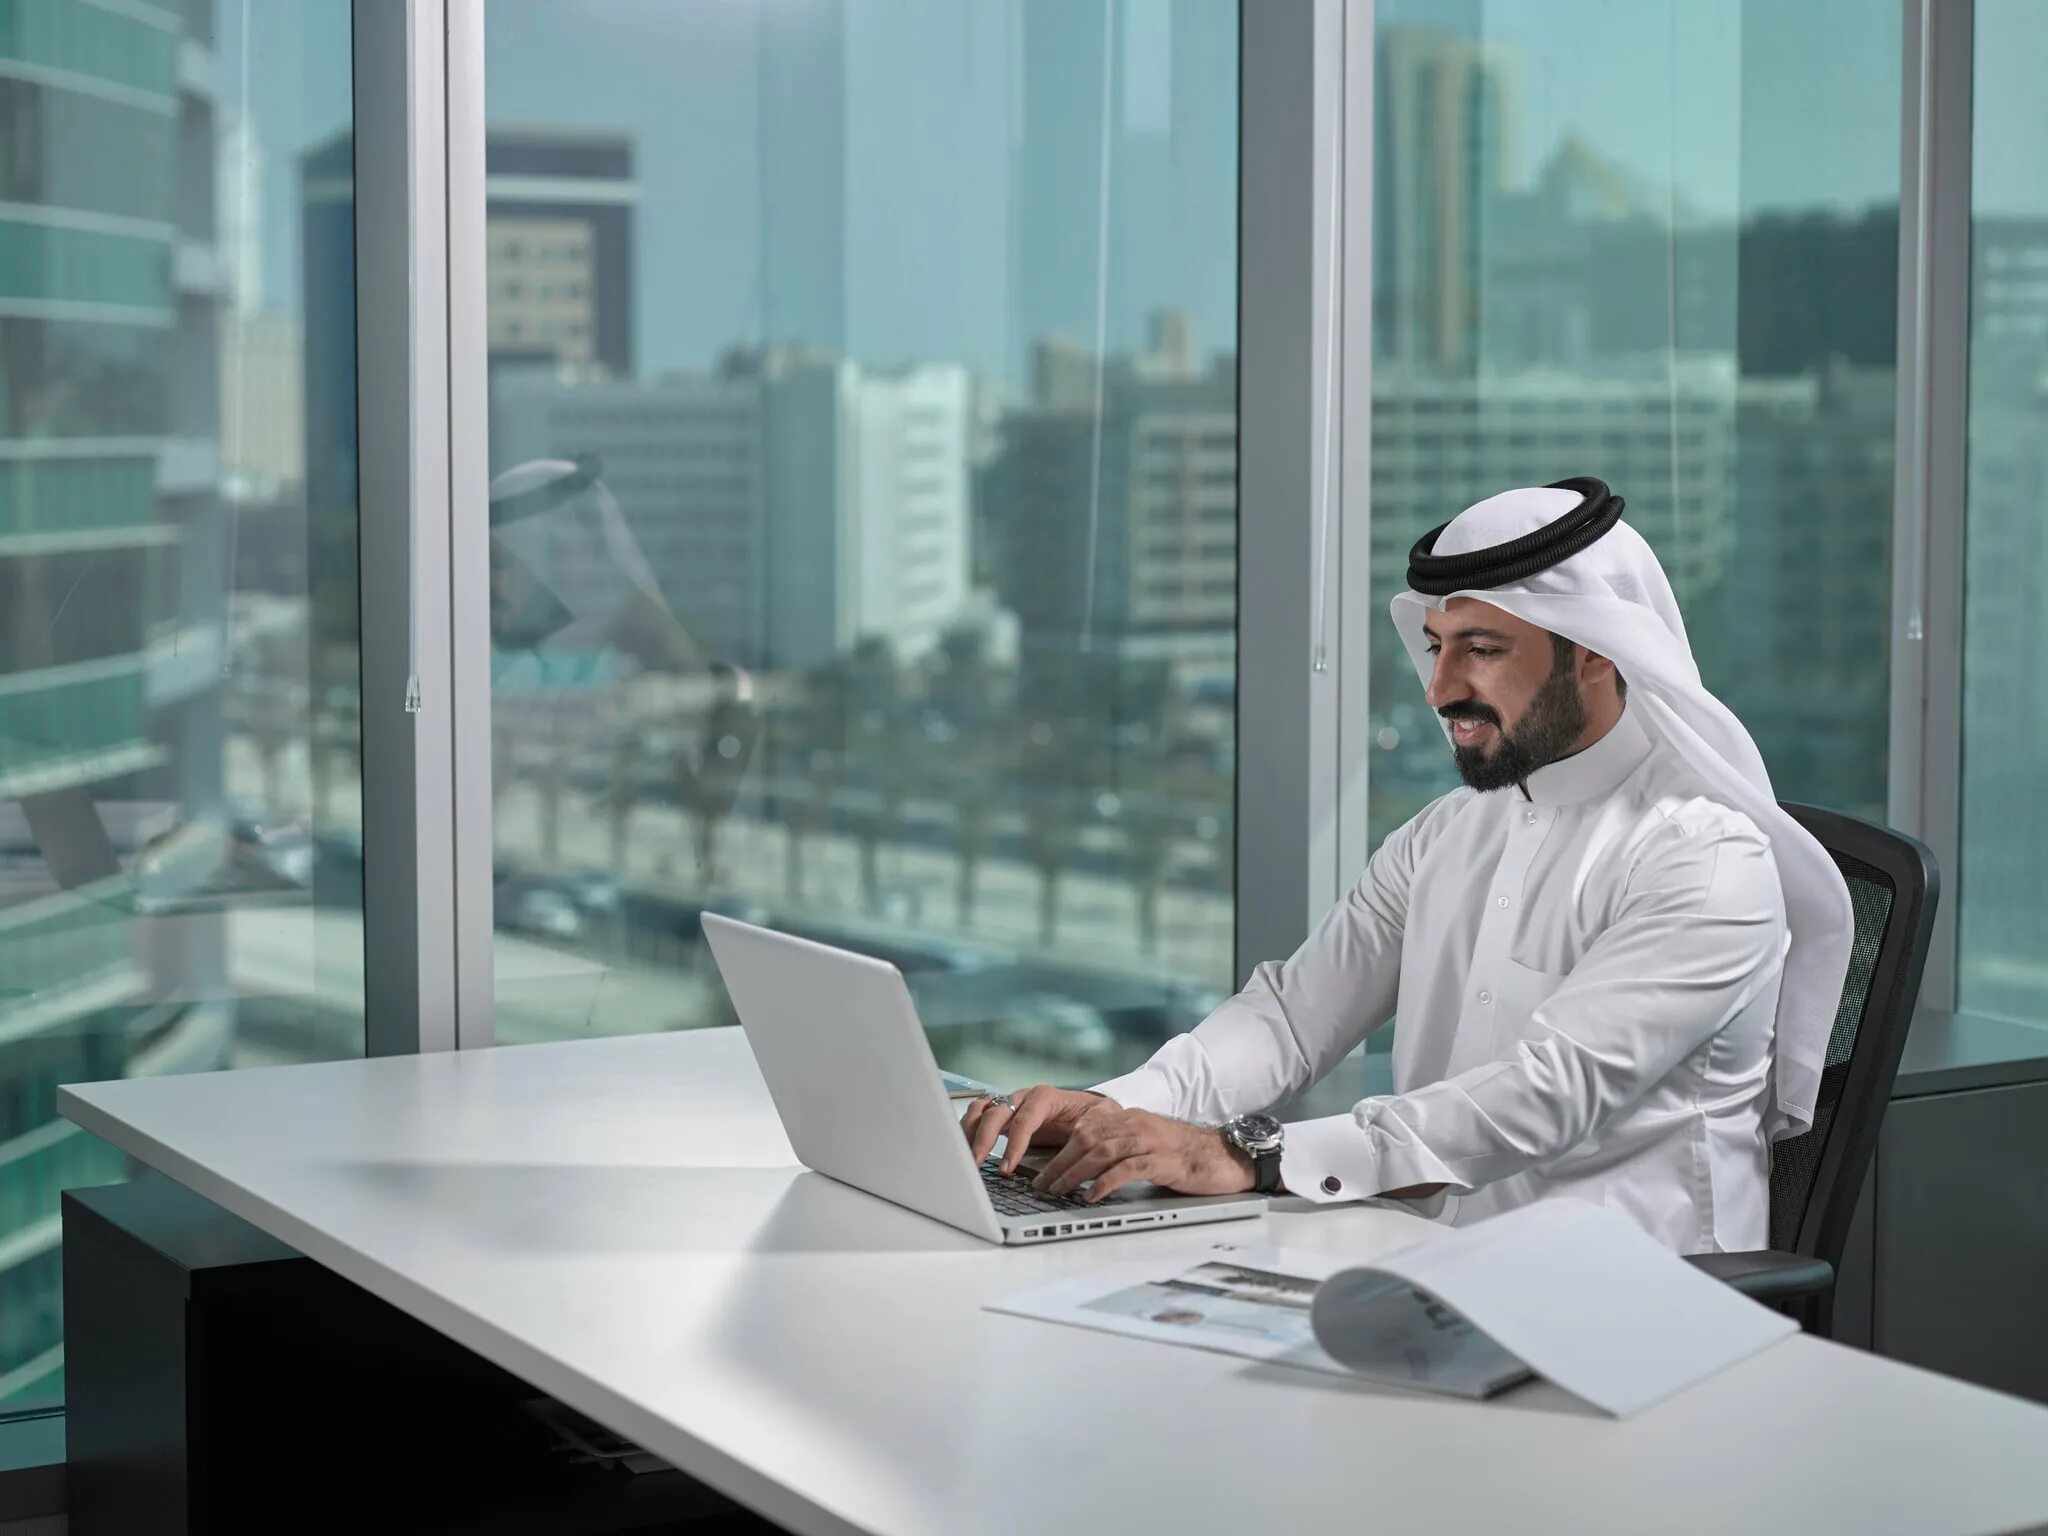 Араб Имиратох. Араб в офисе. Араб за компьютером. Арабский предприниматель.